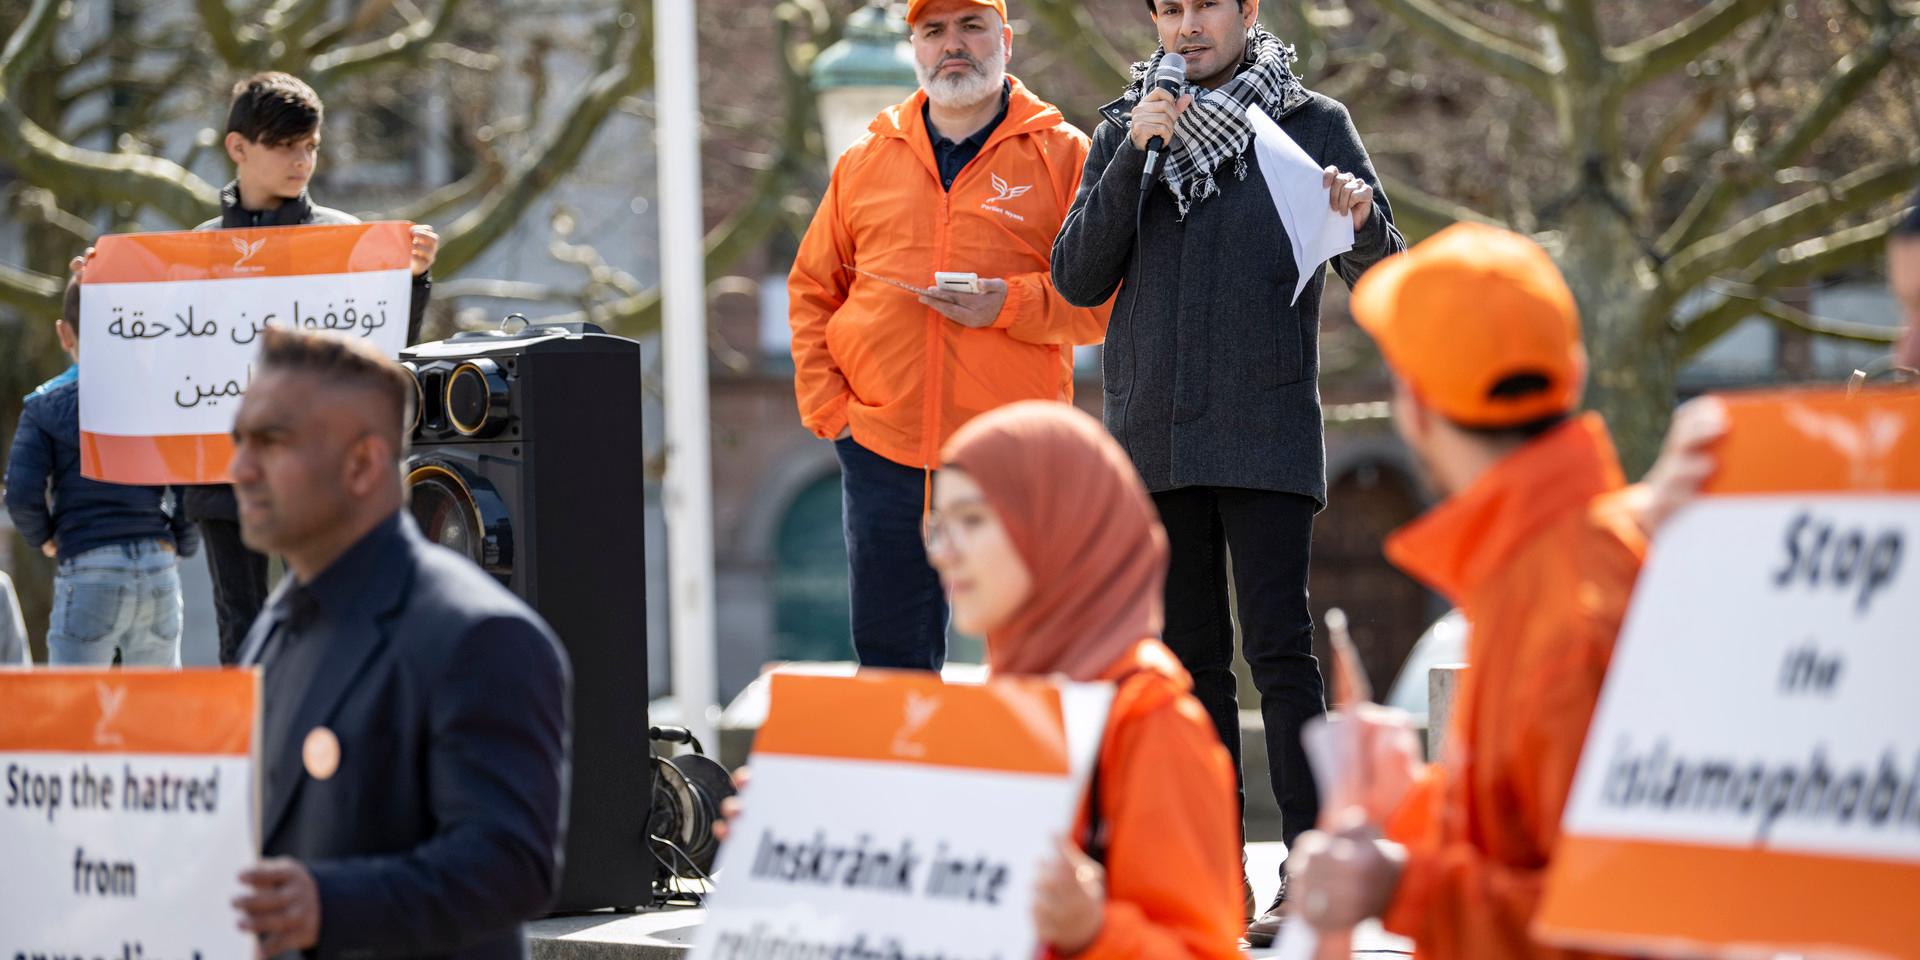 Nyans partiledare, Mikail Yüksel, under en manifestation på Stortorget i Malmö mot Rasmus Paludans koranbränningar. 

